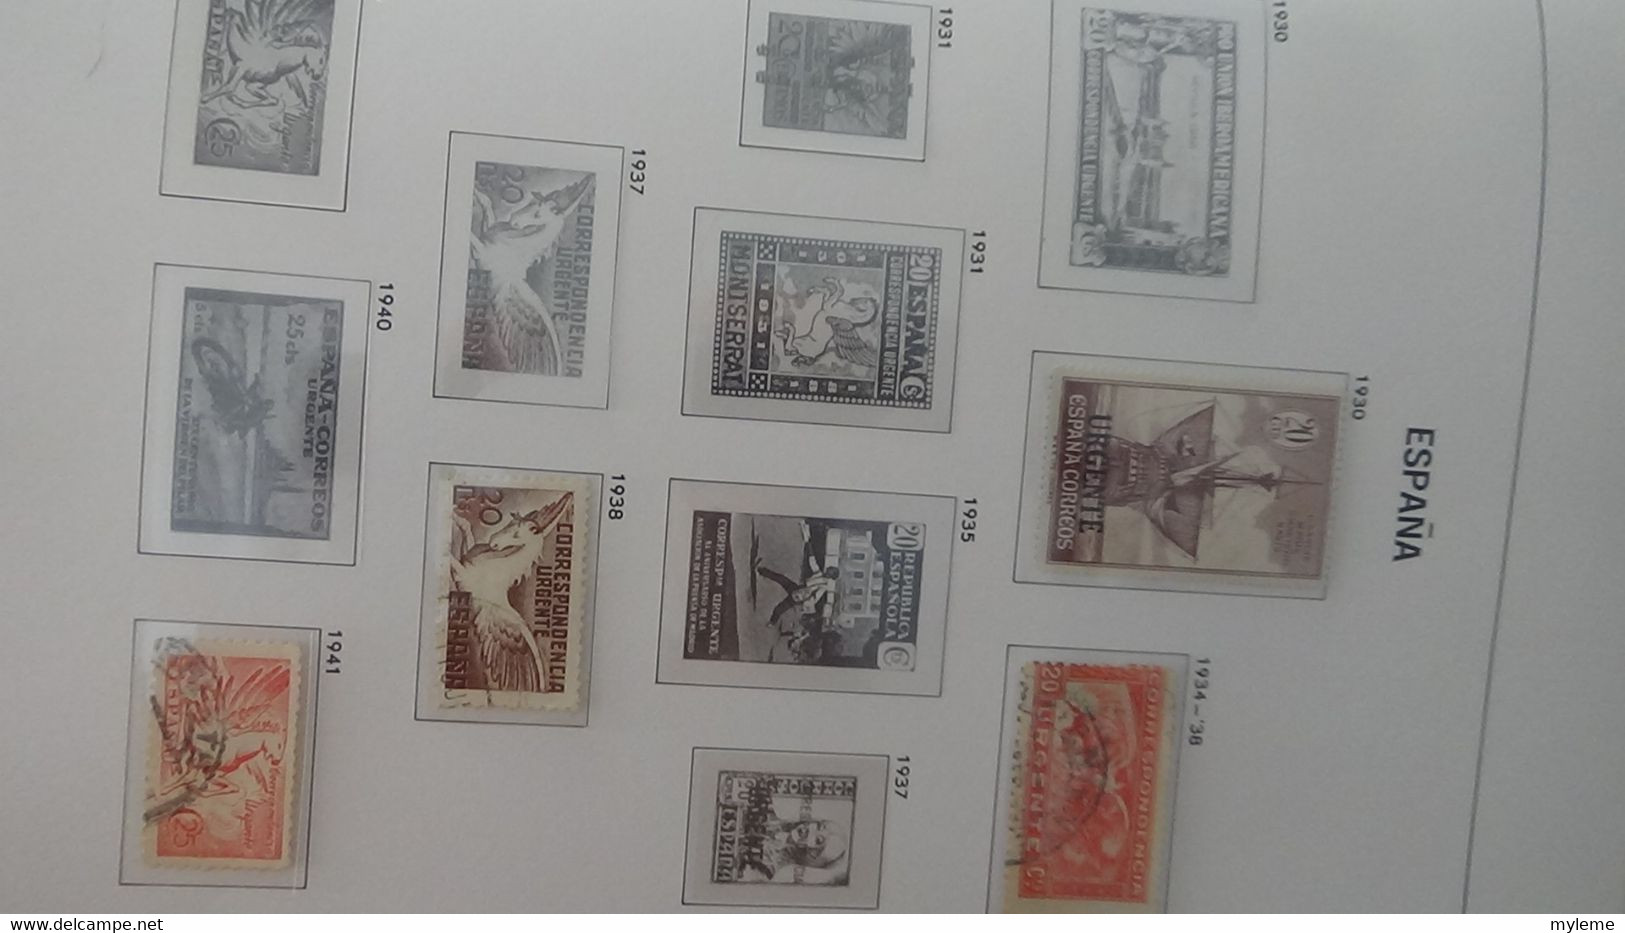 AC280 Reliure DAVO Espagne en timbres **, * et oblitérés  de 1850 à 1940 à compléter.. A saisir !!!